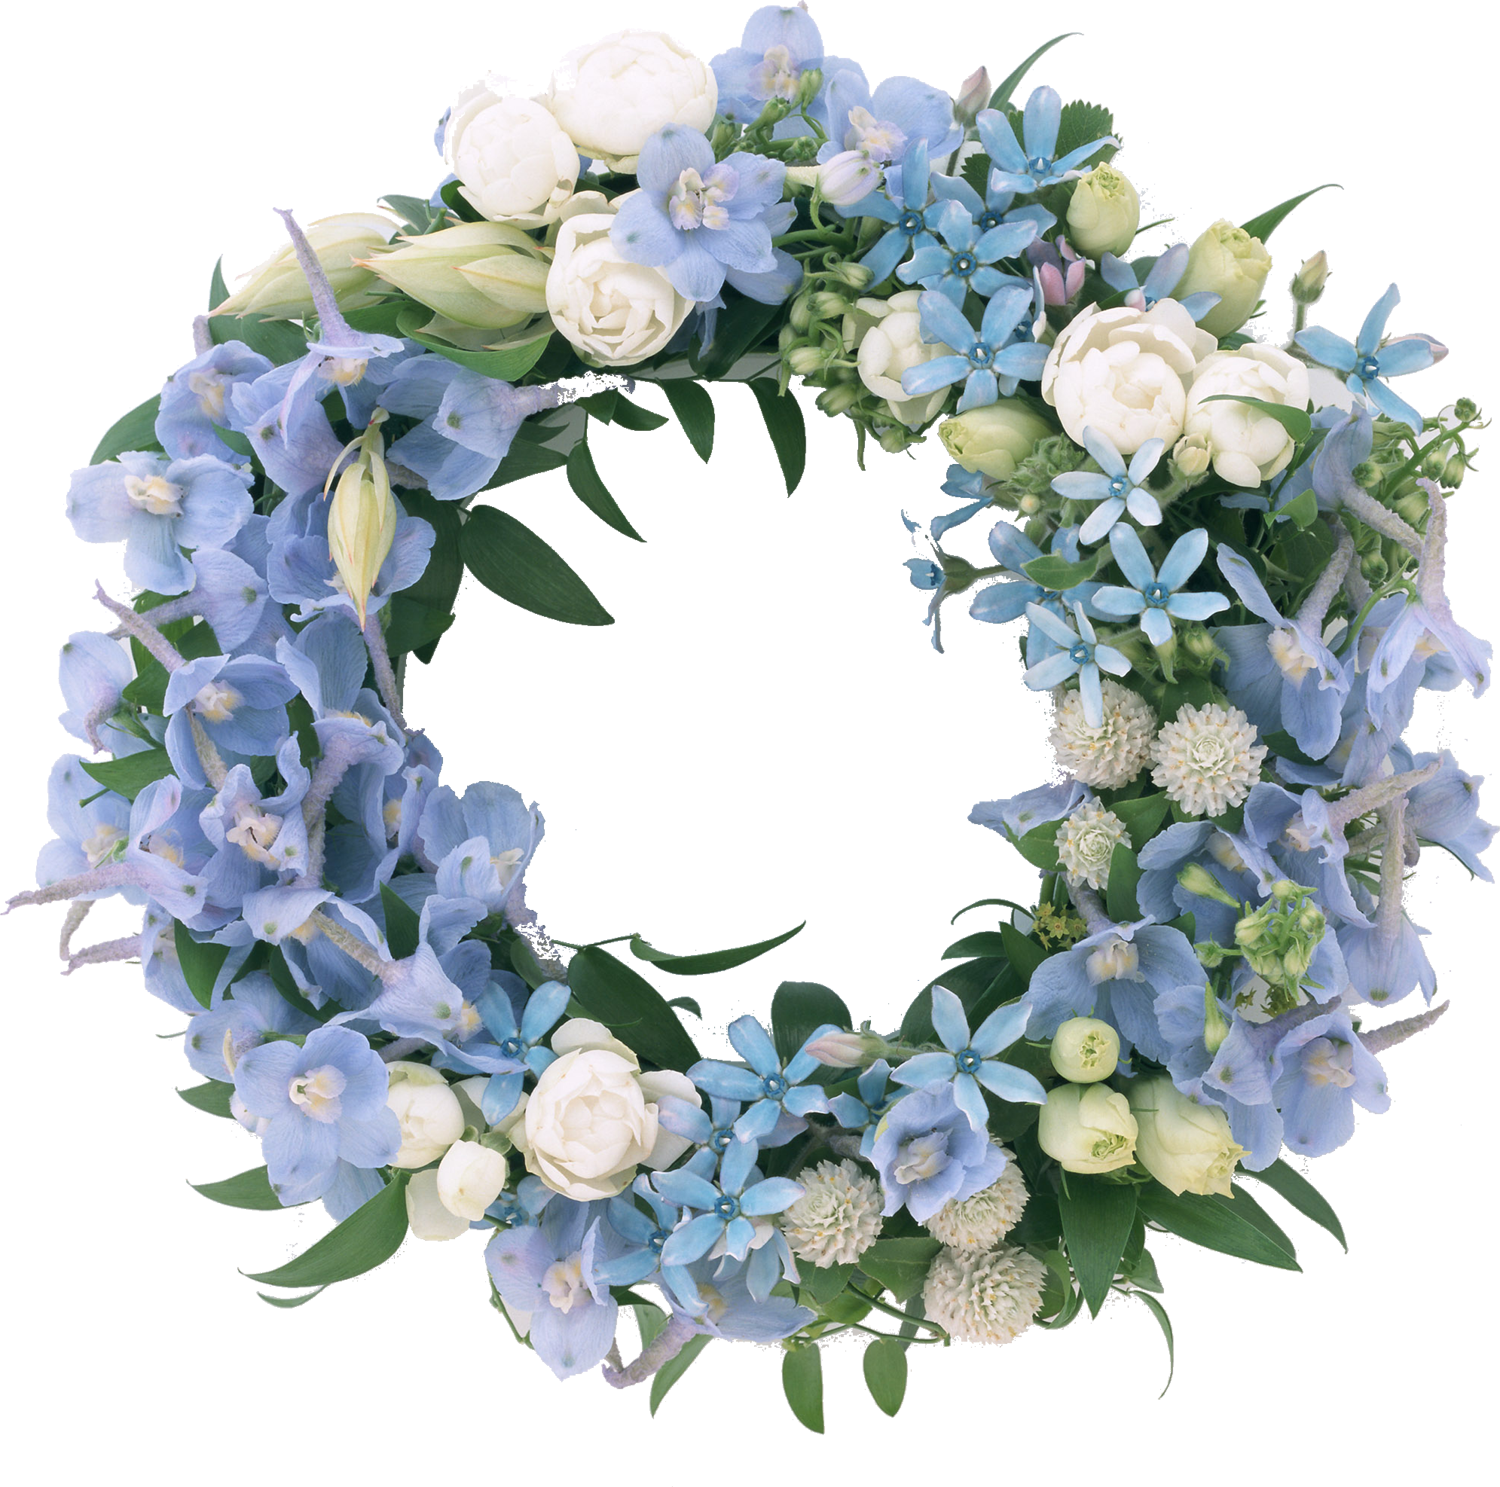 青い花の写真 フリー素材 No 487 青 水色 白 緑葉